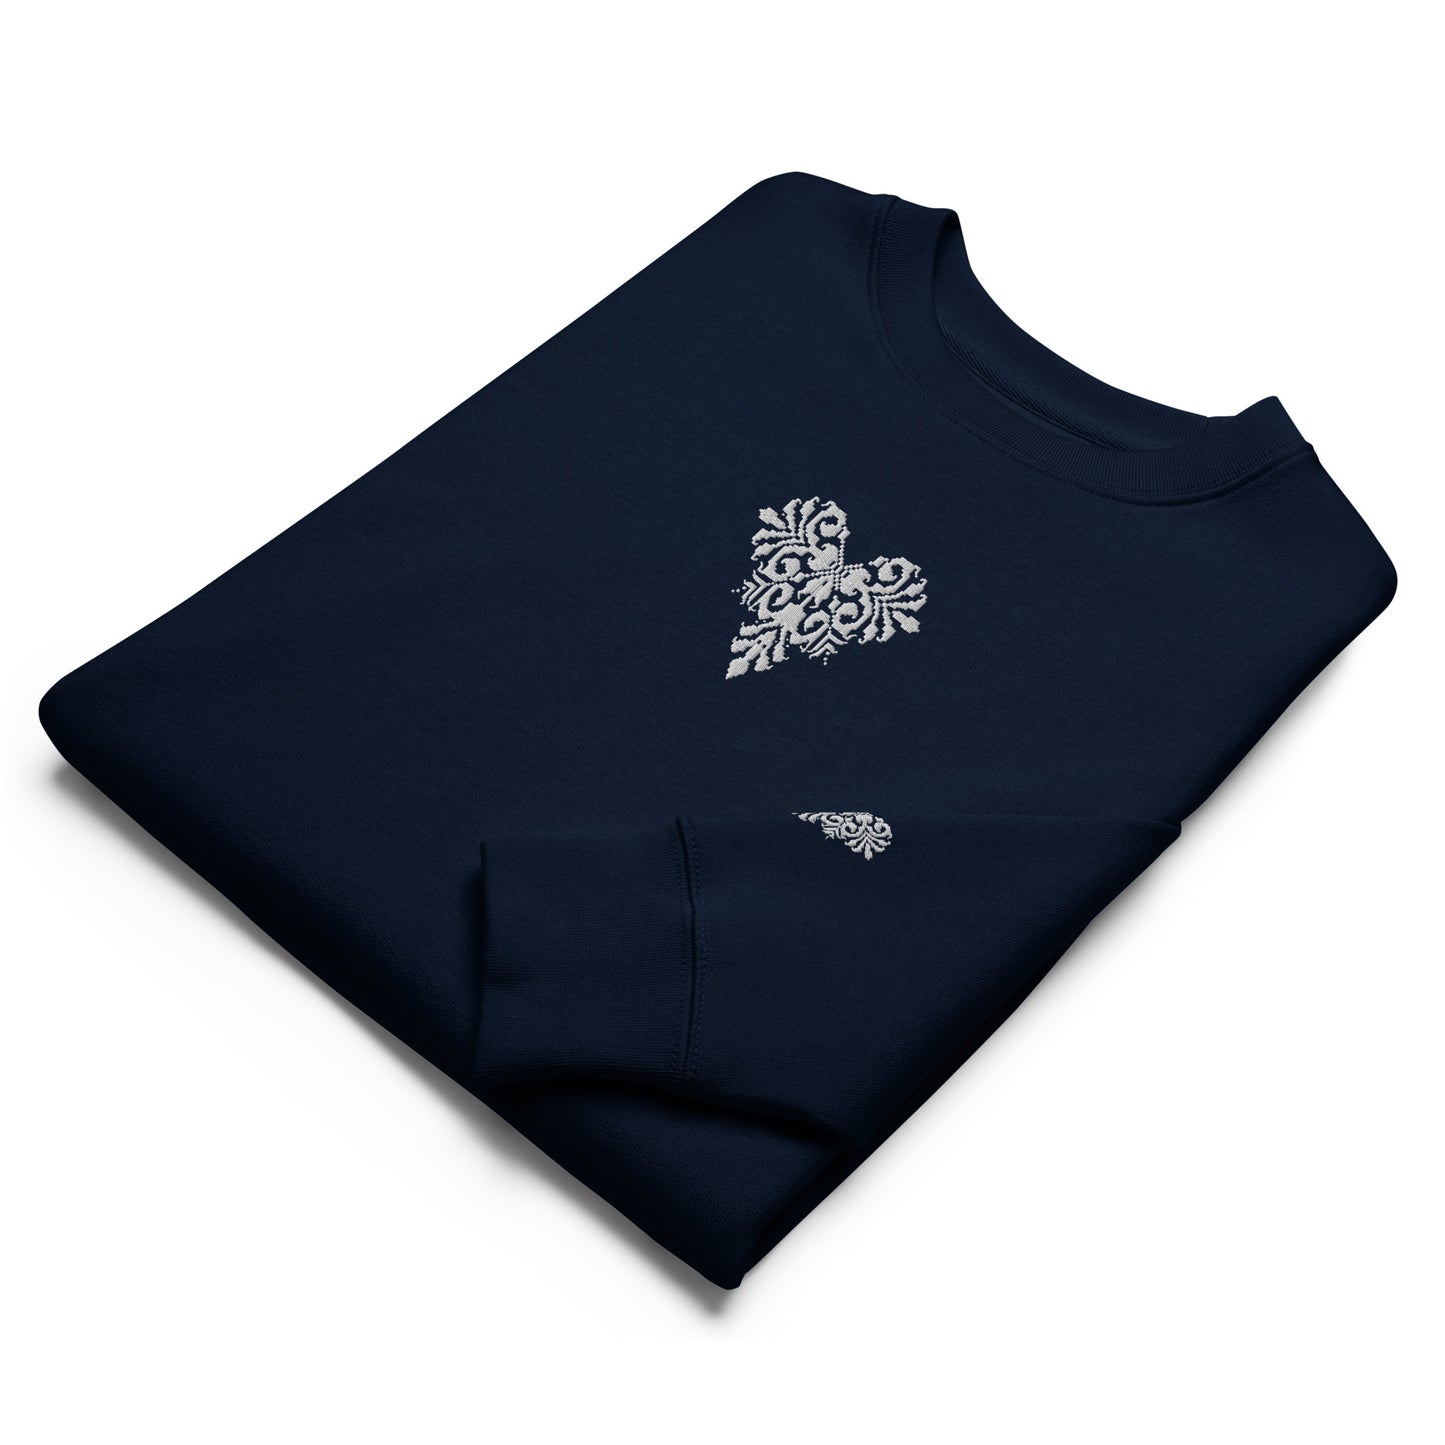 Flower Heart, SRDN Classic sweatshirt